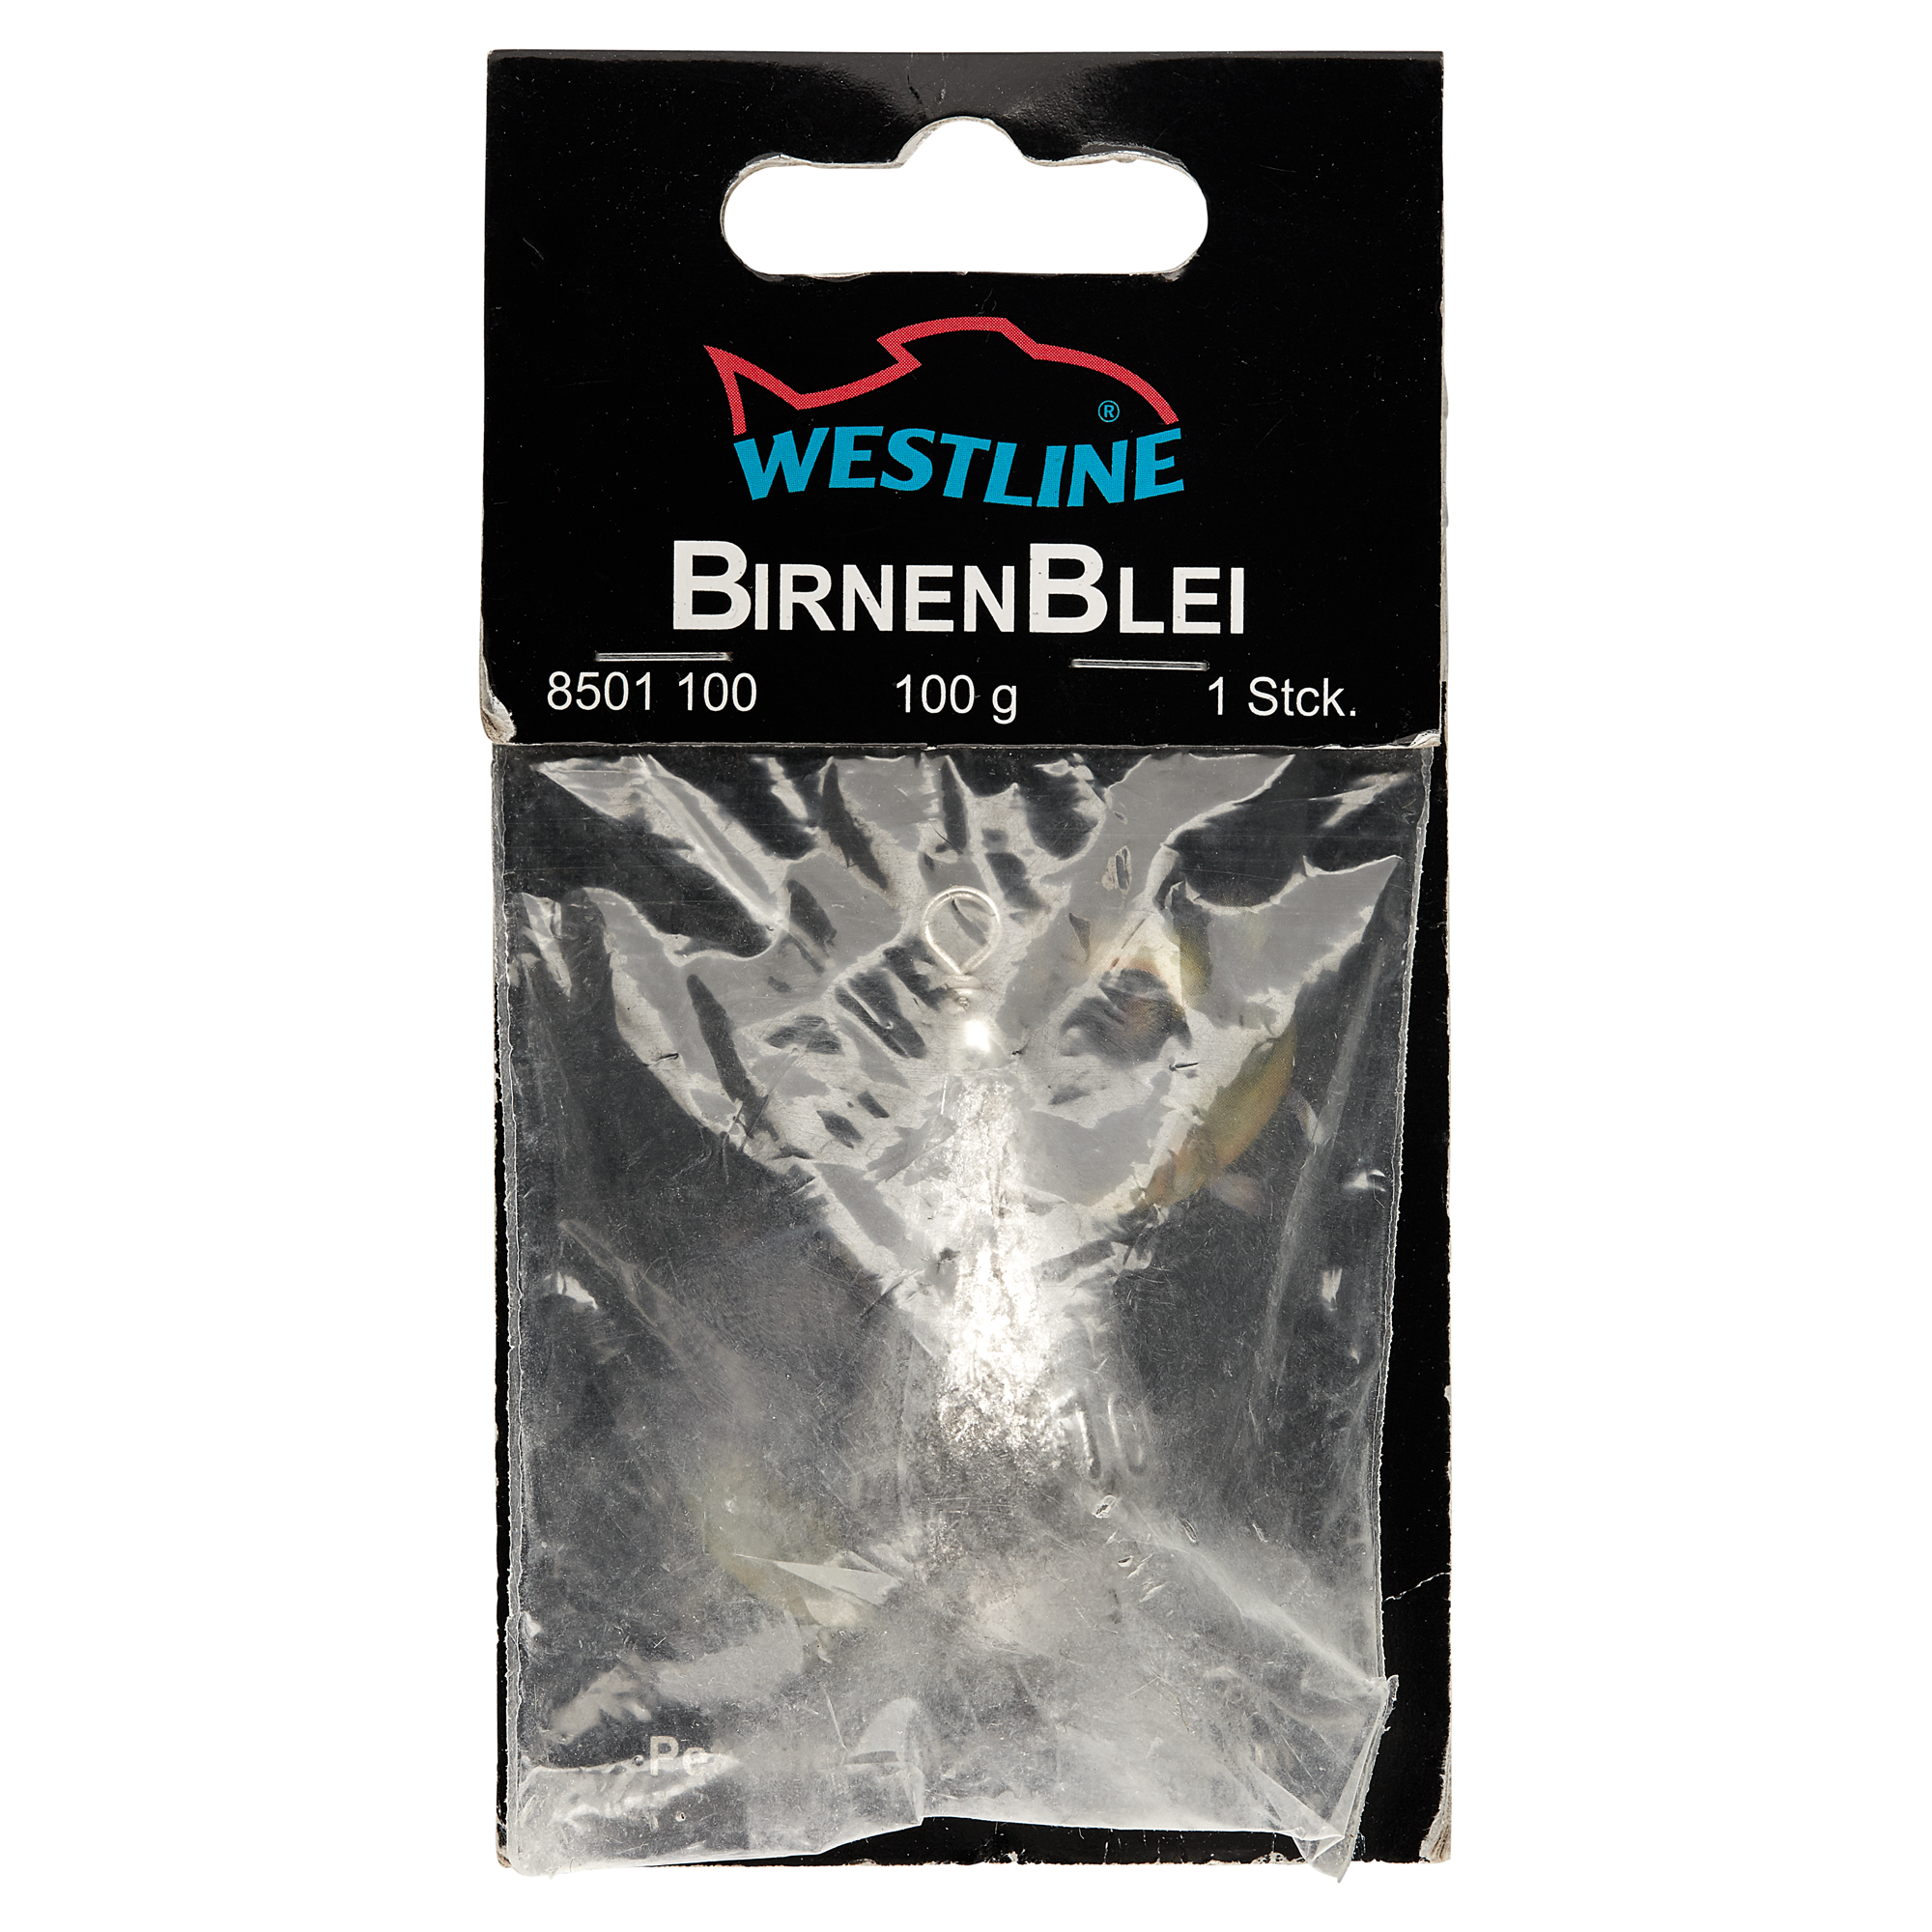 Birnenblei mit Wirbel 100 g + product picture